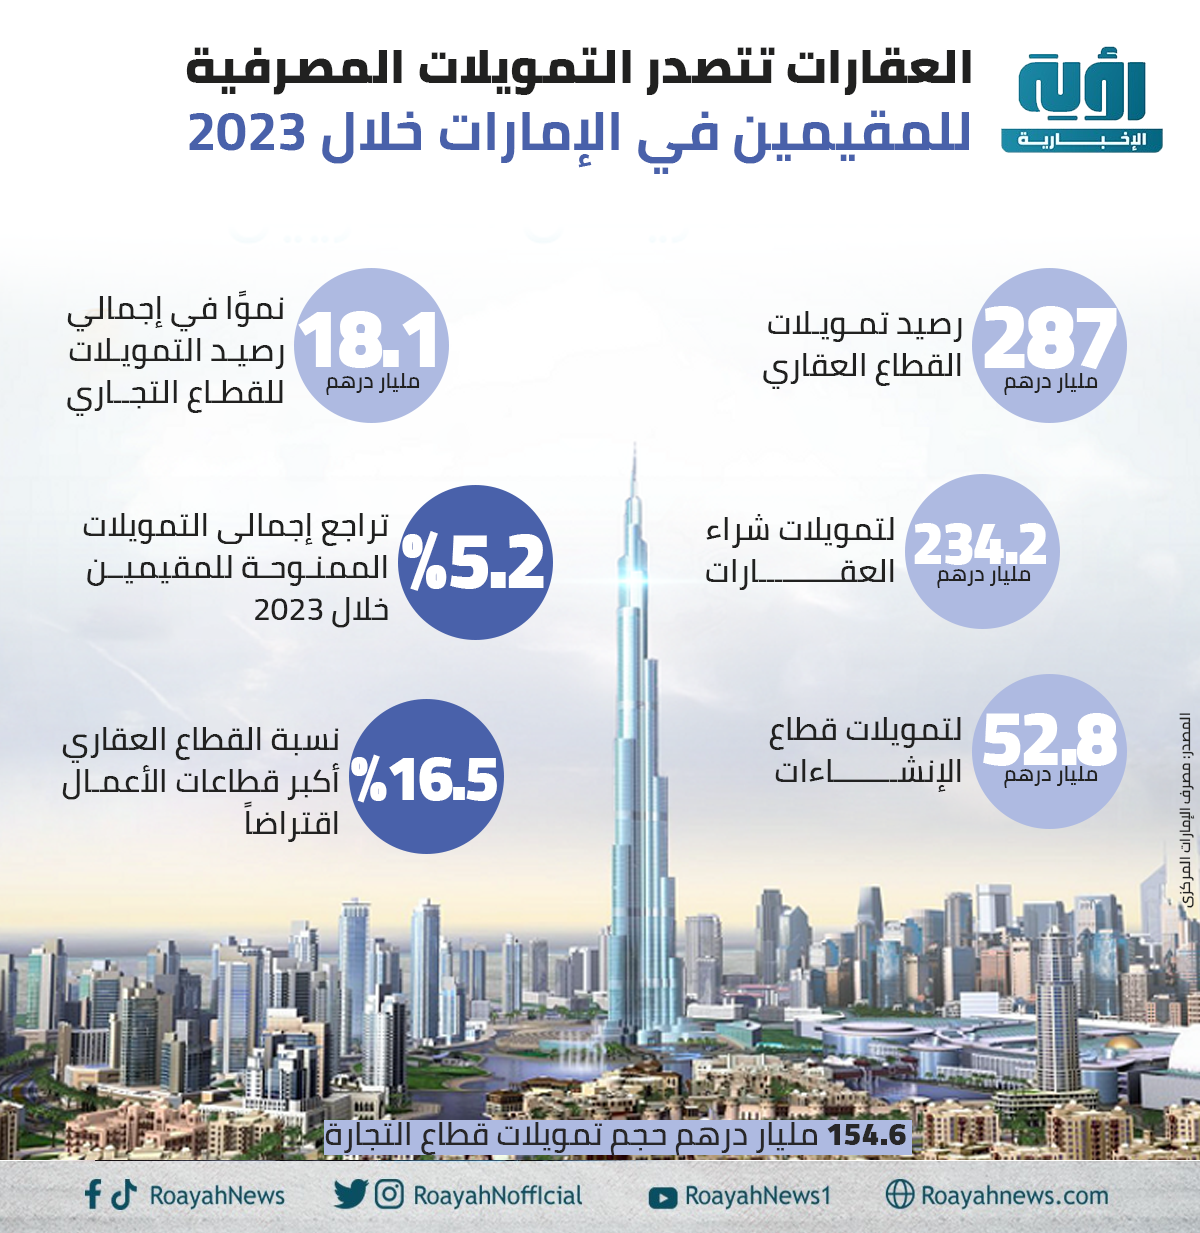 العقارات تتصدر التمويلات المصرفية للمقيمين في الإمارات خلال 2023